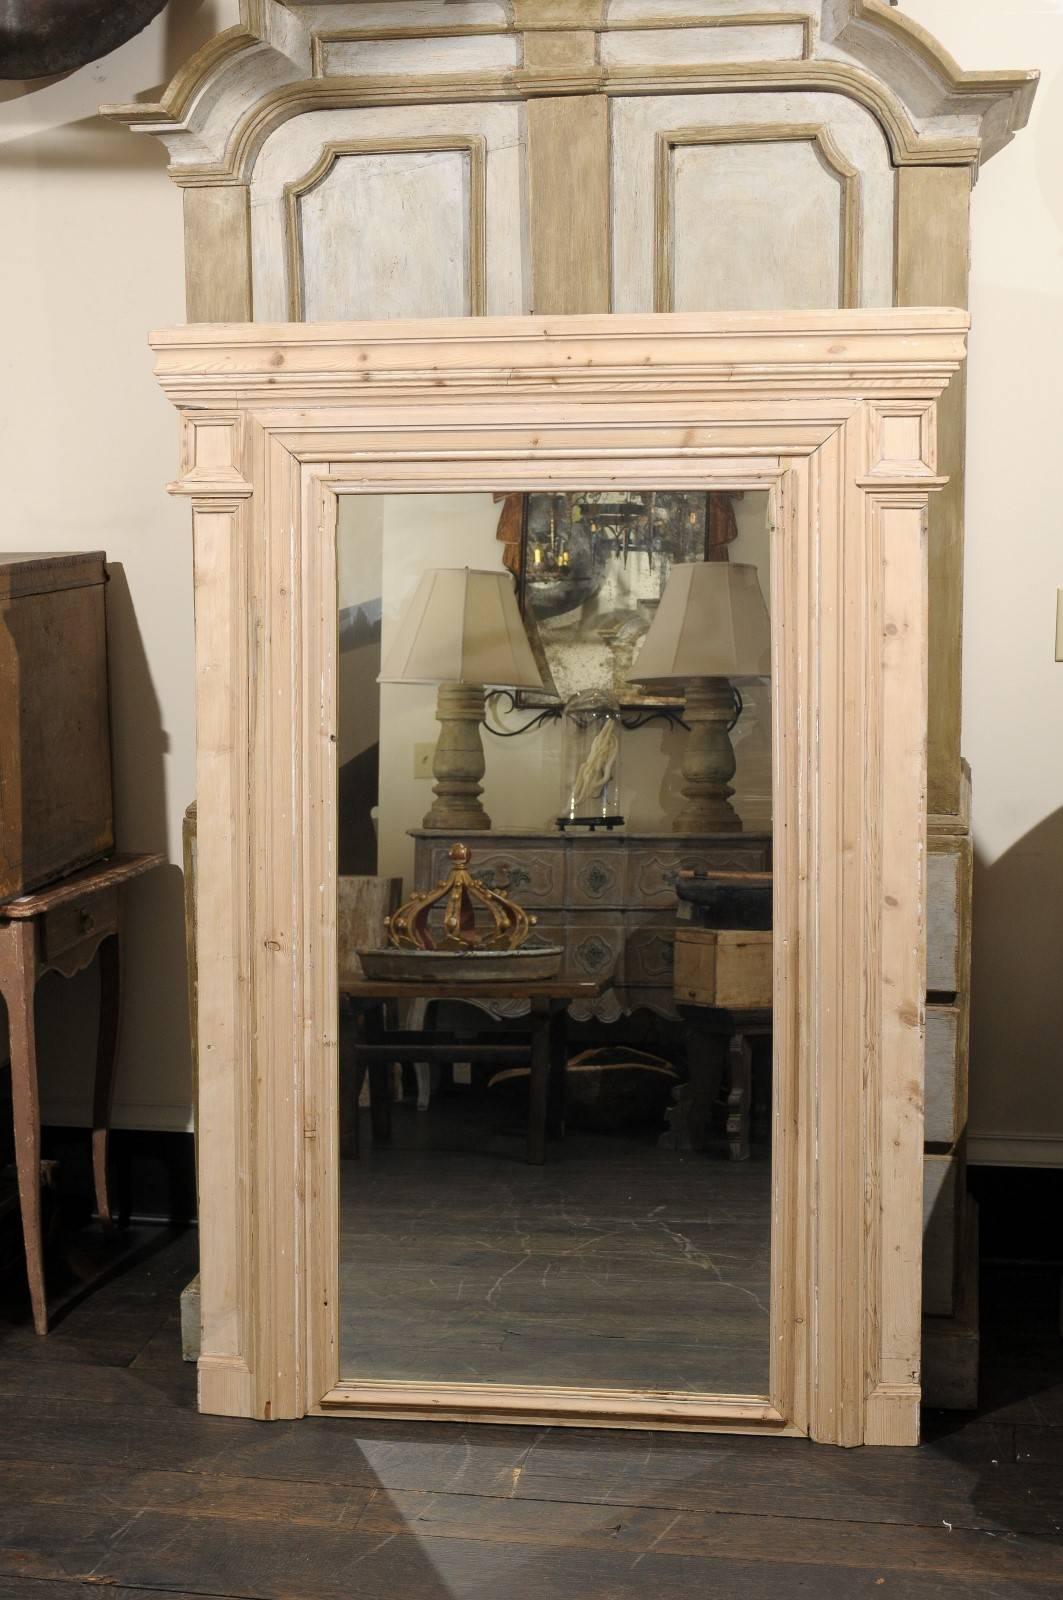 Un miroir trumeau français du 19ème siècle aux lignes simples et épurées. Ce grand miroir français présente une finition en bois naturel avec un beau grain de bois visible partout. Ce miroir a un aspect très simple mais élégant avec ses deux